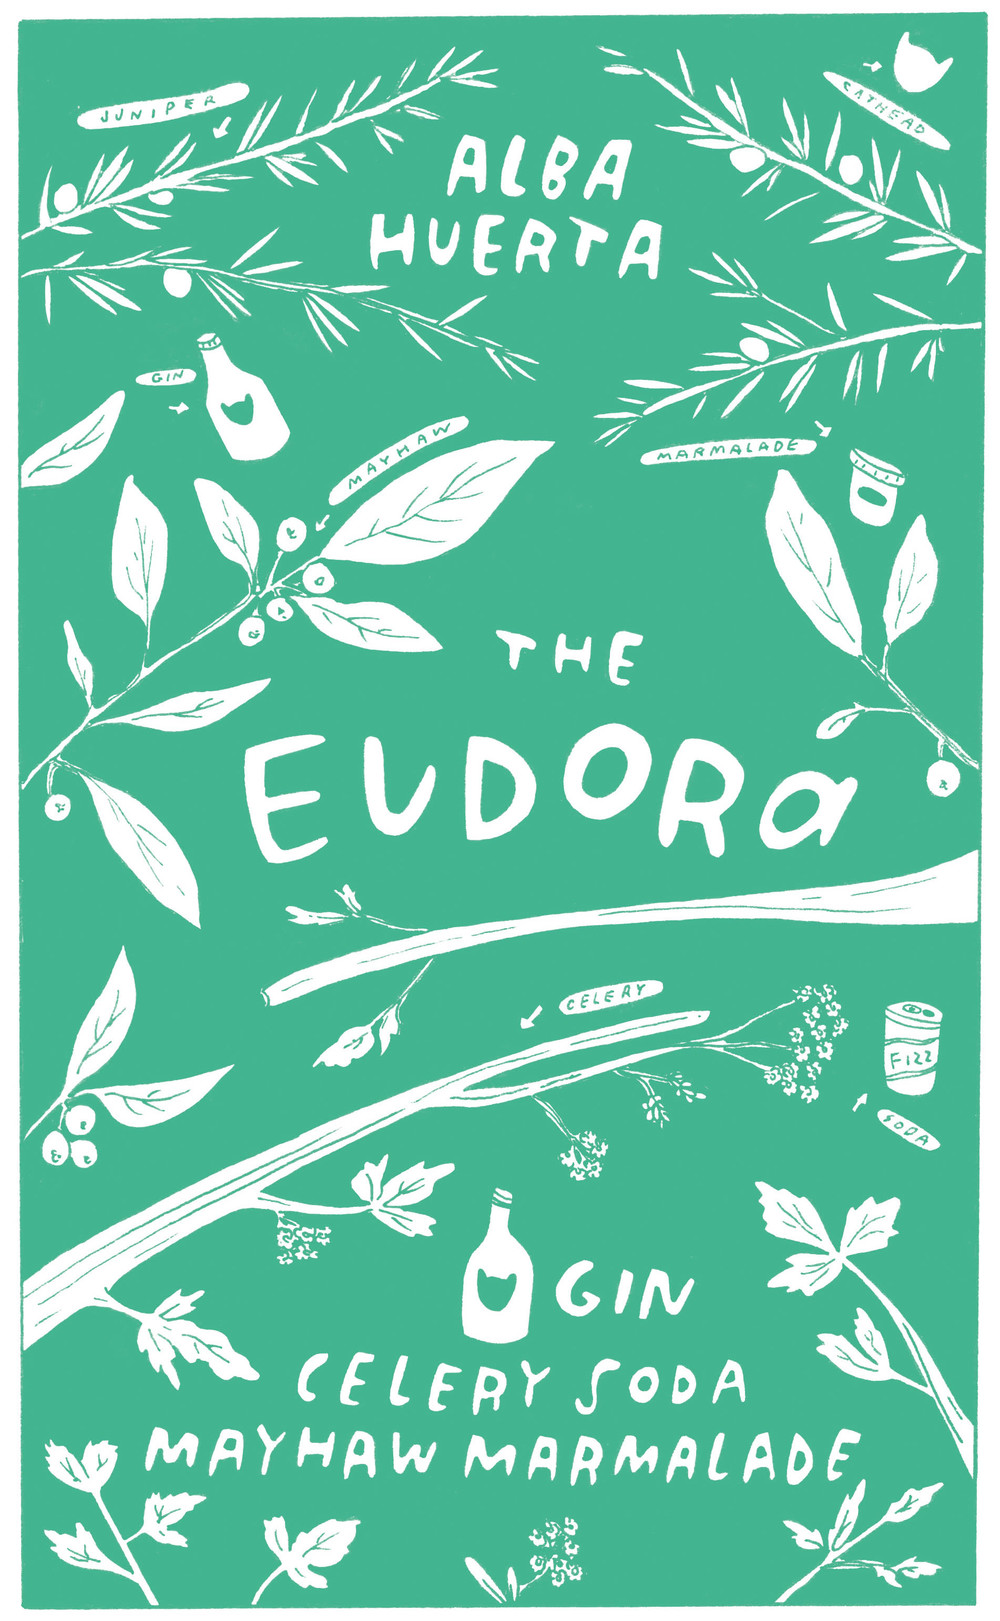 The Eudora